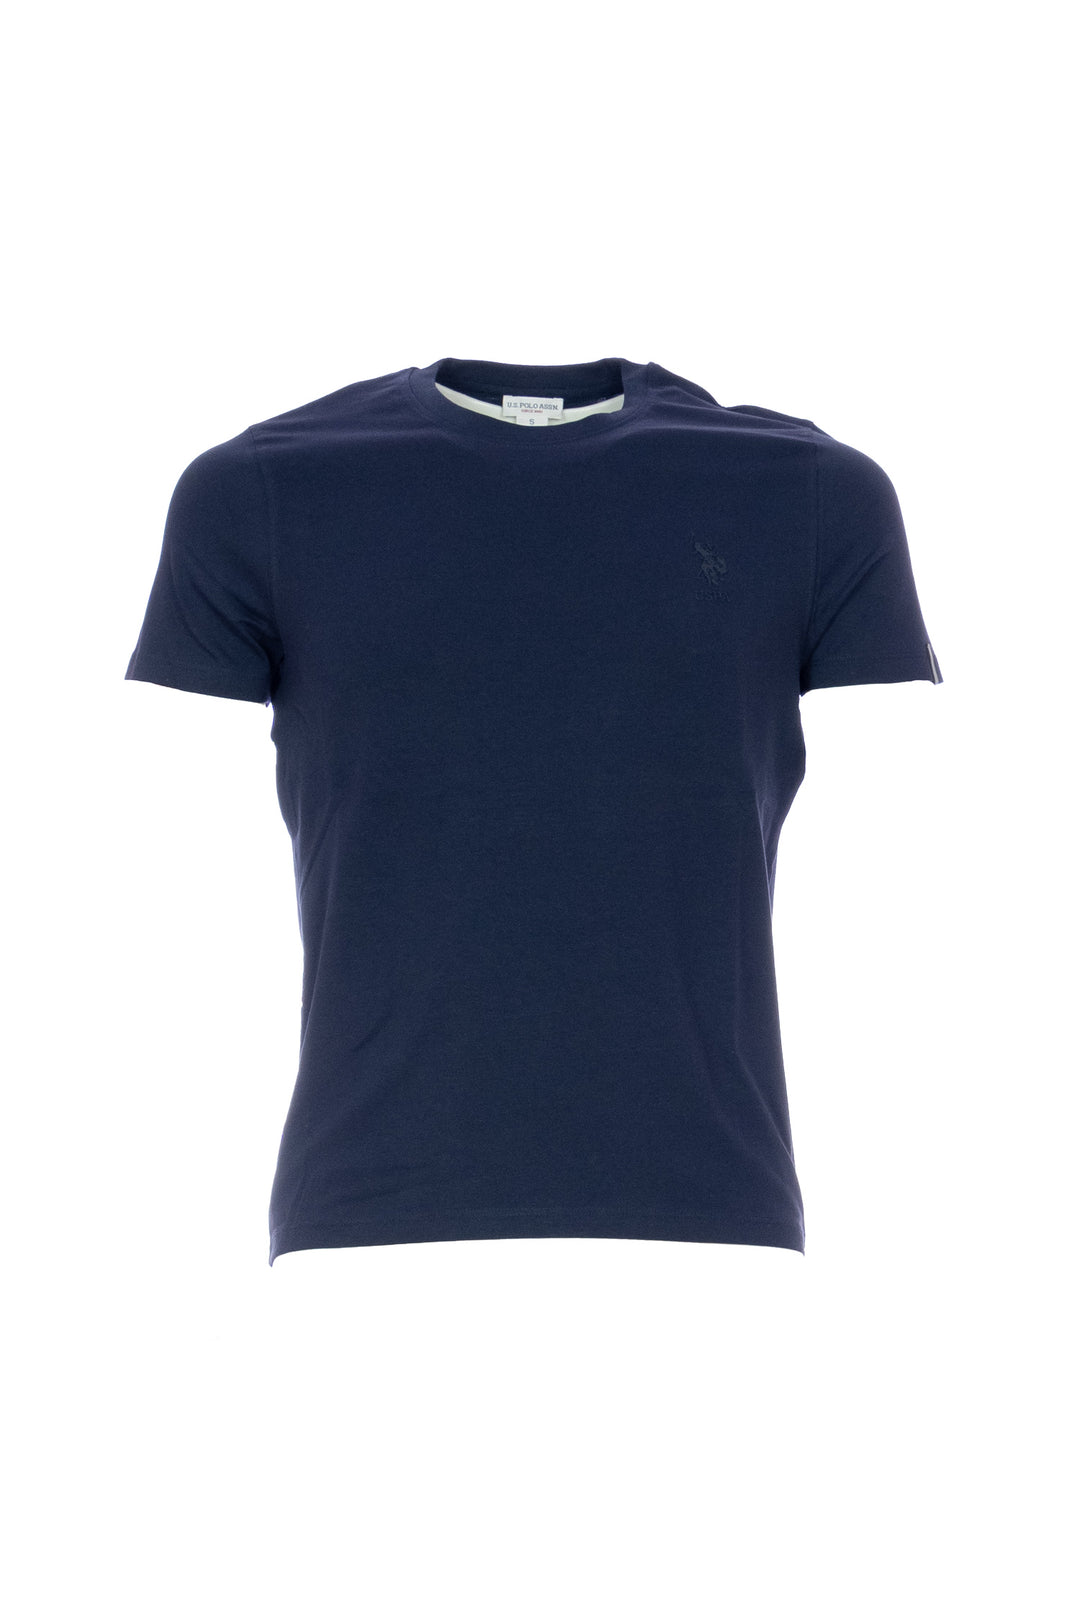 U.S. POLO ASSN. T-shirt blu navy in cotone stretch con logo USPA sul petto - Mancinelli 1954